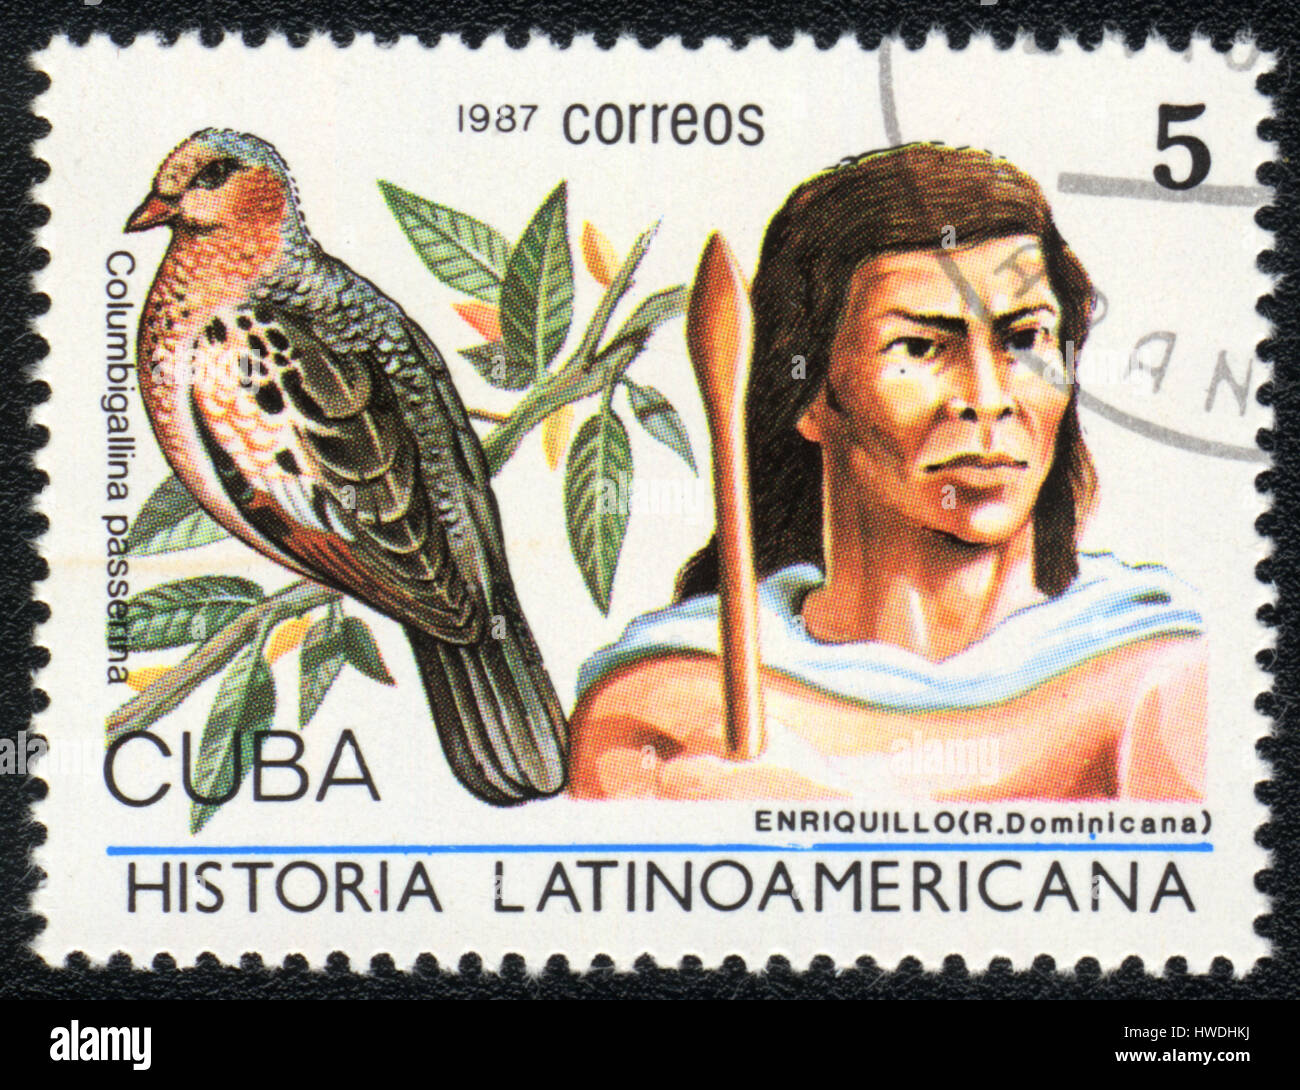 Un timbre-poste imprimé en Cuba montre une image d'Enriquillo (Dominicana) et columbigallina passerina, à partir de la série Historia, vers Latinoavericana Banque D'Images